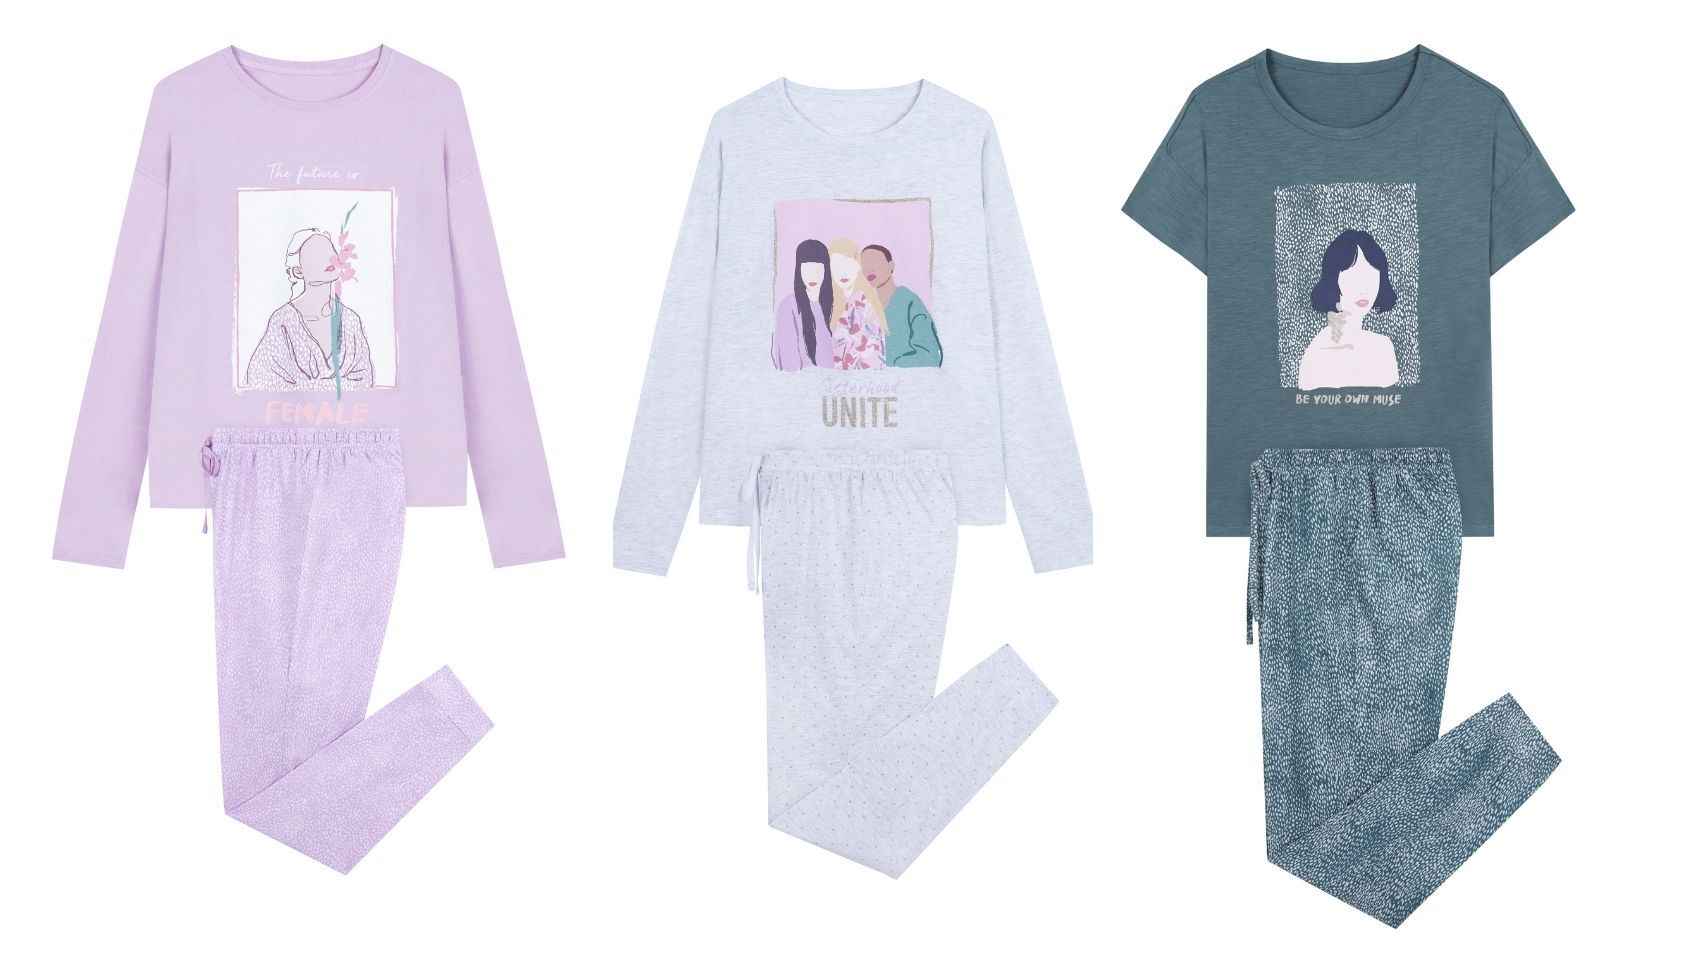 Women'secret ha diseñado estos pijamas con mensajes empoderados con ilustraciones de féminas.